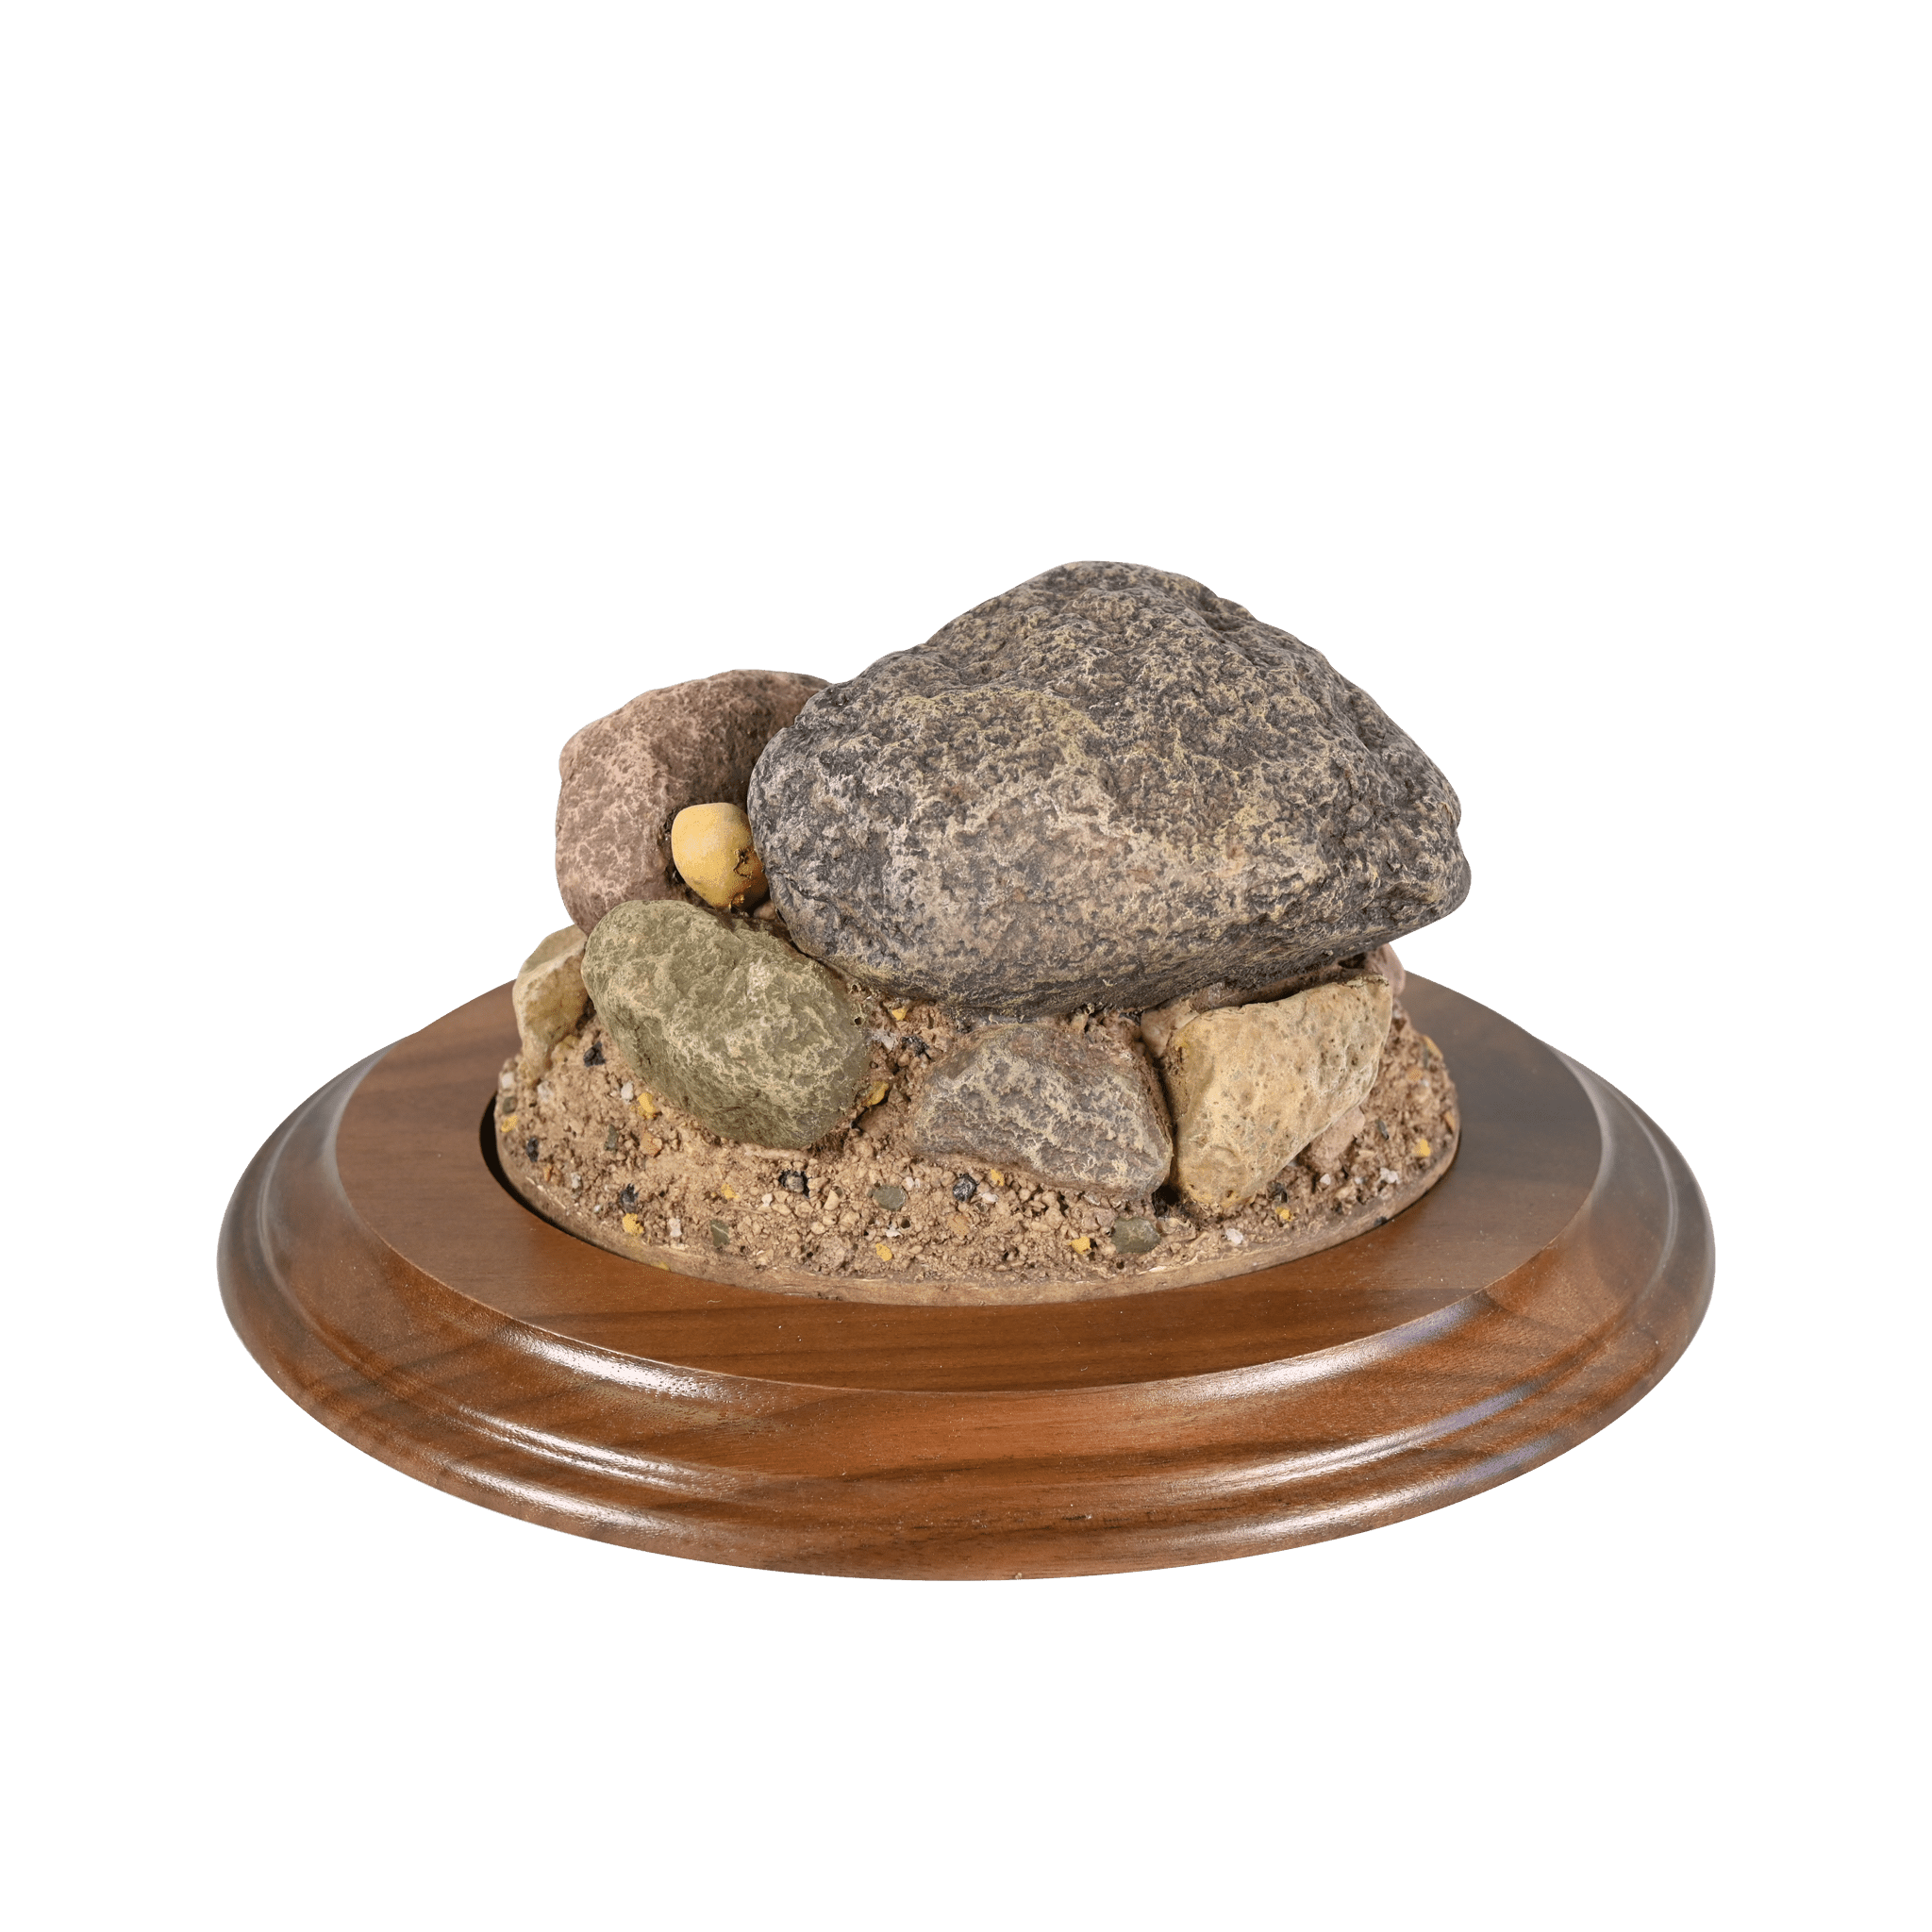 Rock Base (Small Oval) - Matuska Taxidermy Supply Company